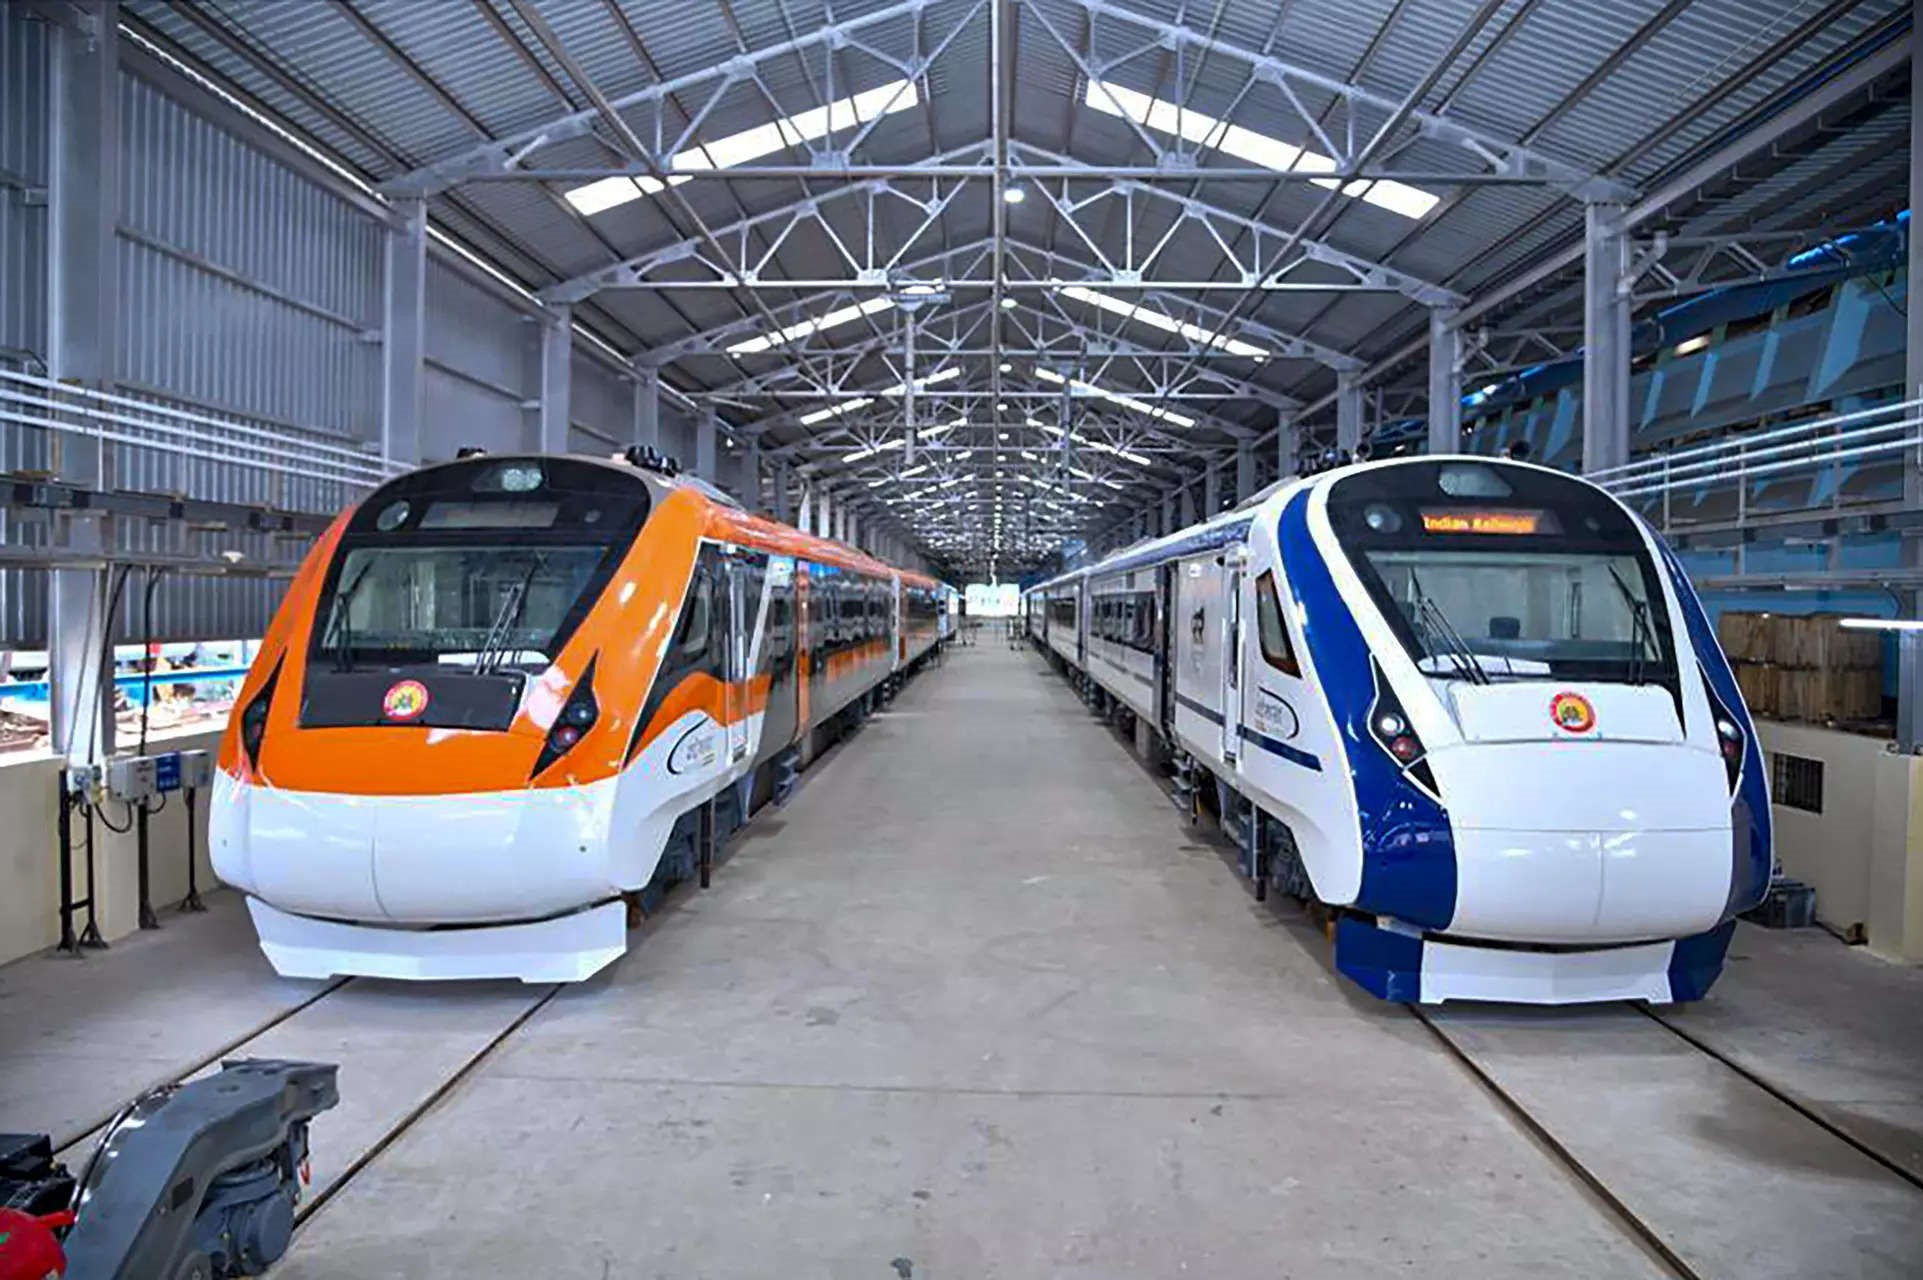 Поезда Vande Bharat второго поколения на заводе ICF в Ченнаи